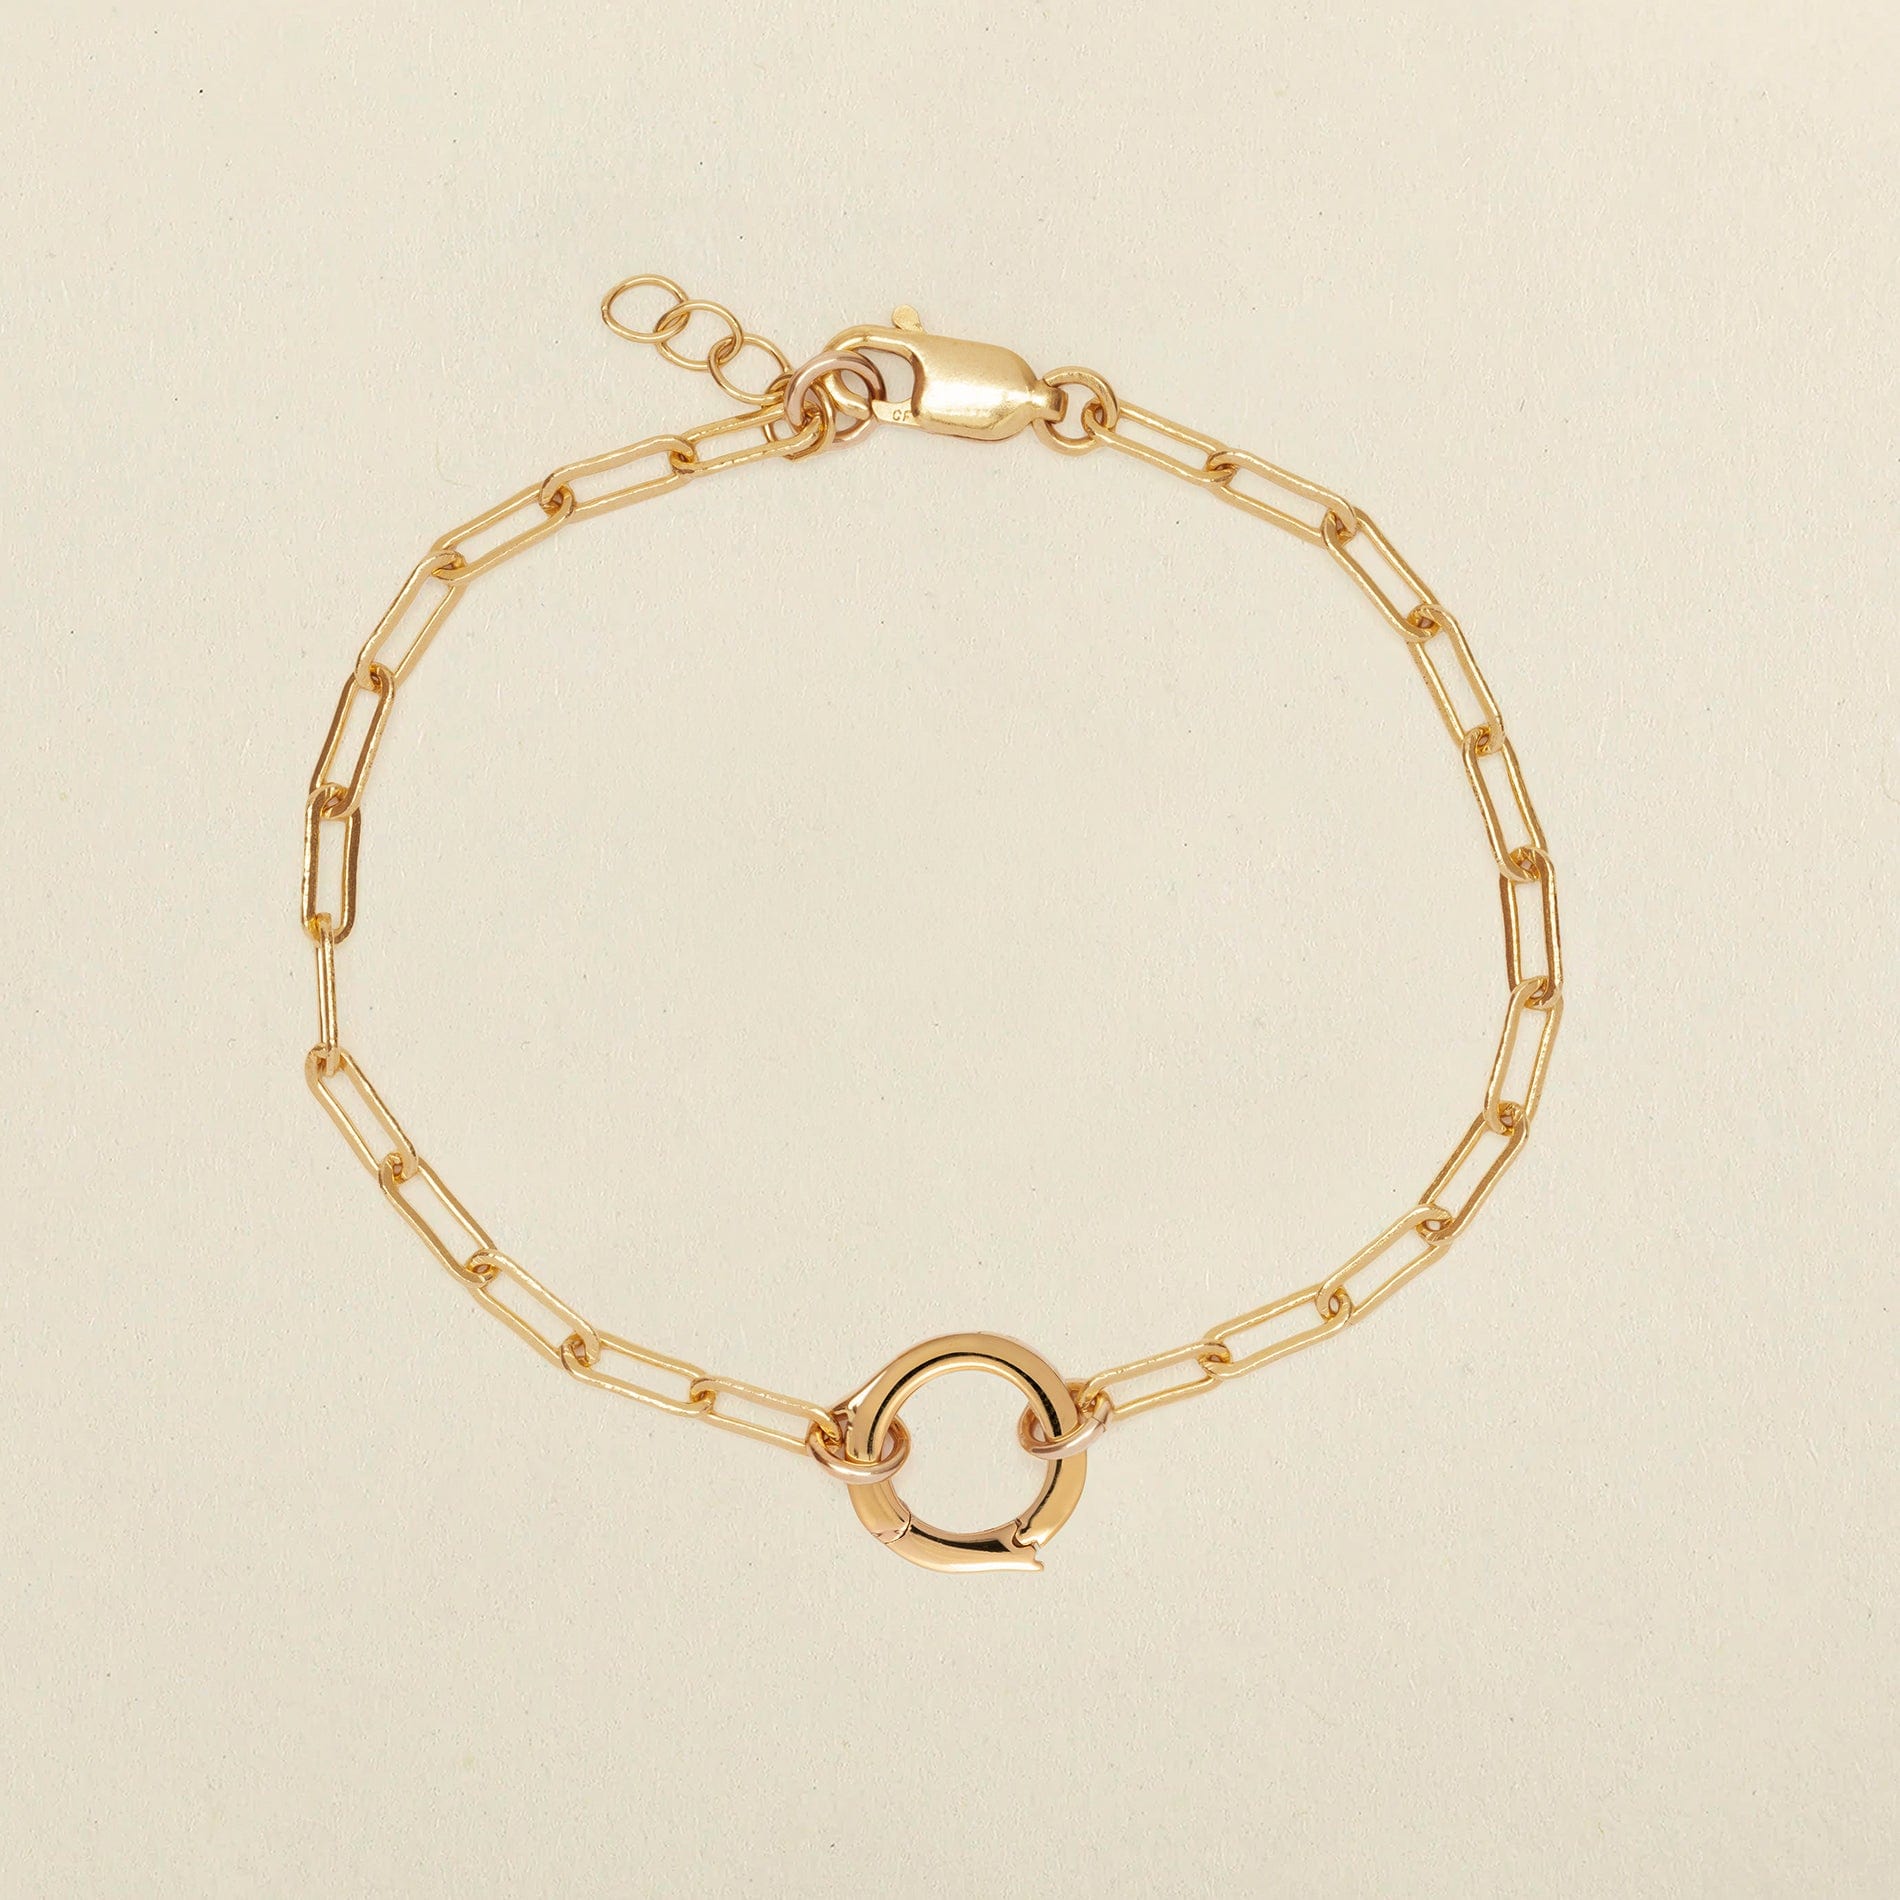 Jude Charm Bracelet Gold Filled / With Link Lock / 6" Bracelet